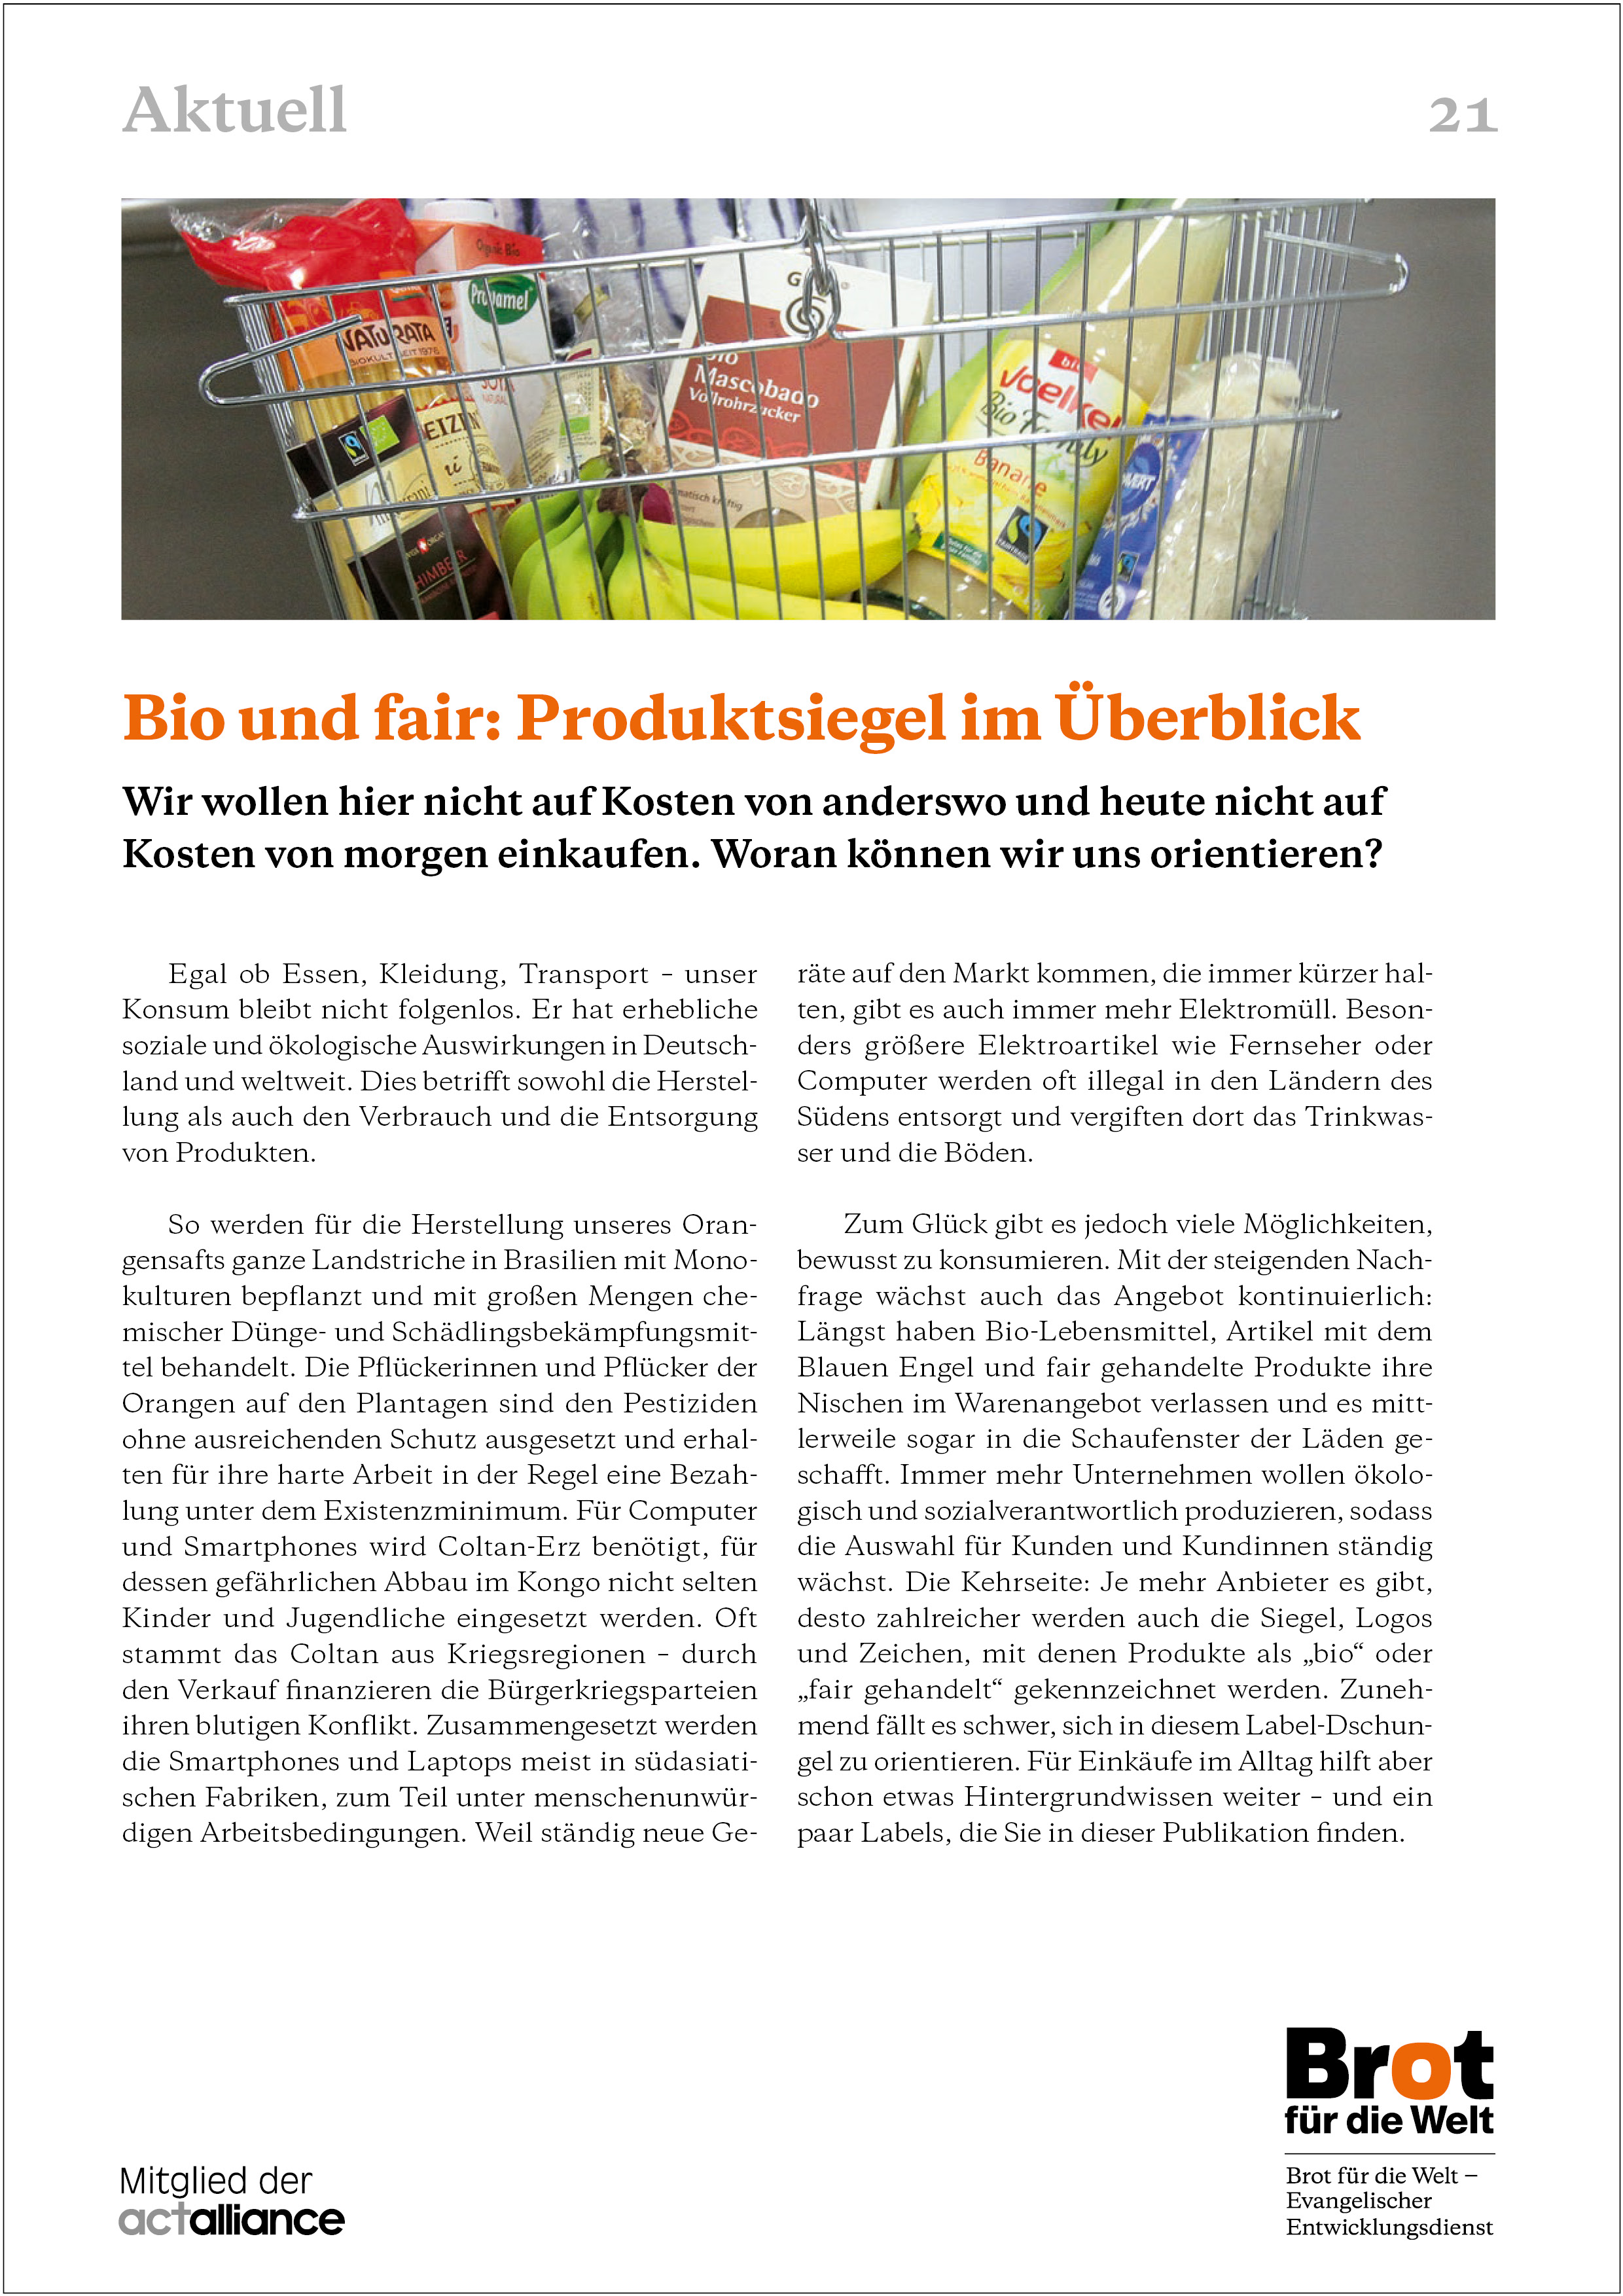 Aktuell 21: Bio und fair: Produktsiegel im Überblick